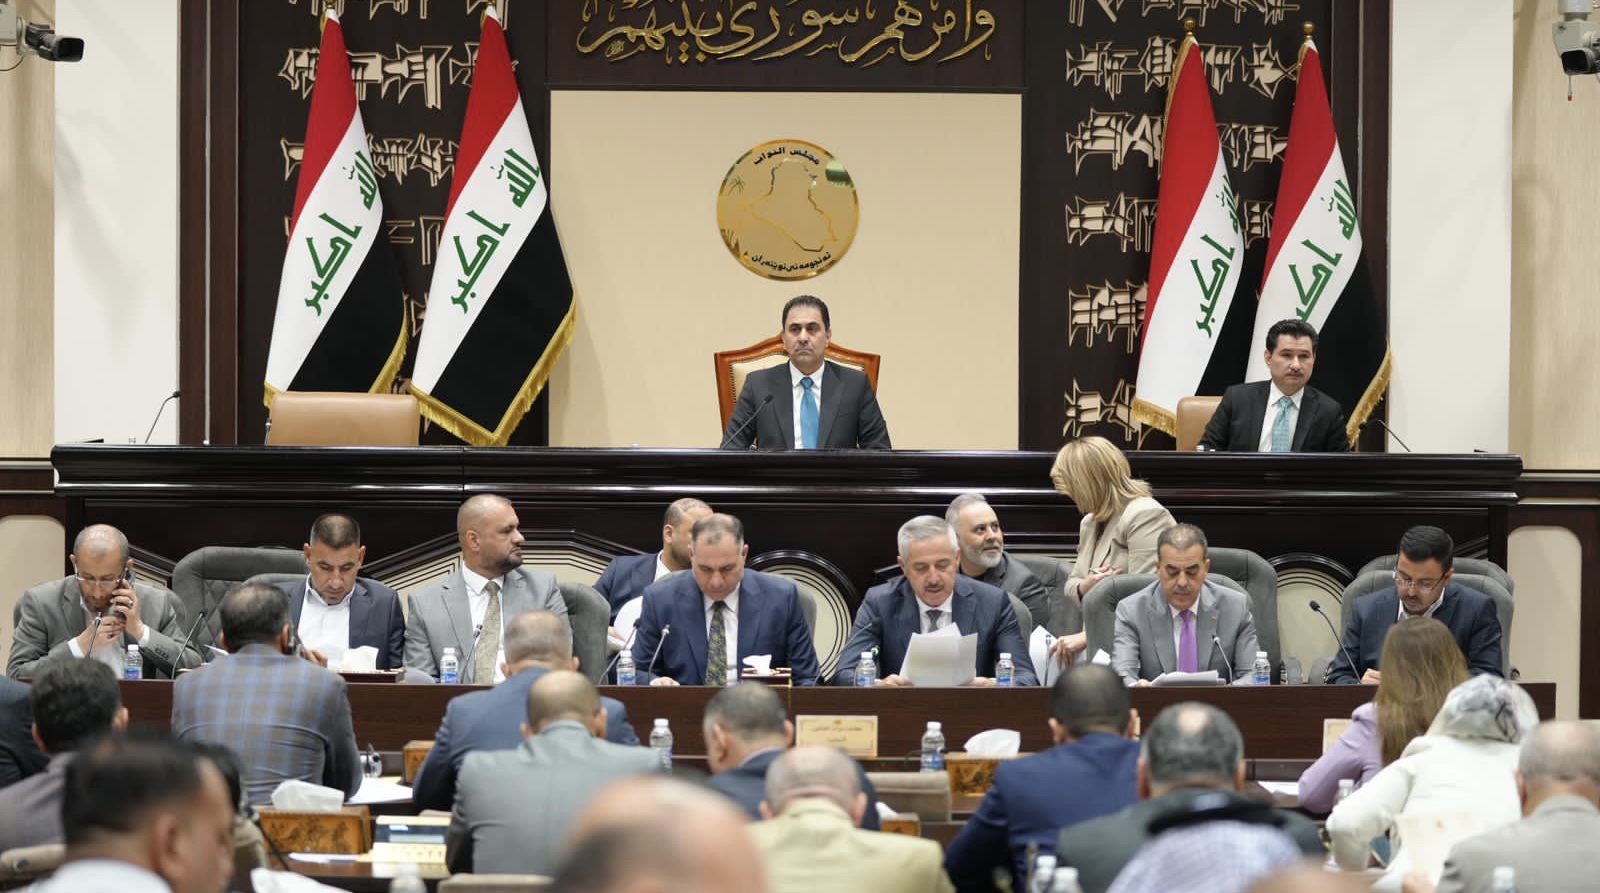 البرلمان العراقي يؤيد قطع العلاقات مع السويد والإطار التنسيقي يُحشّد للتظاهر